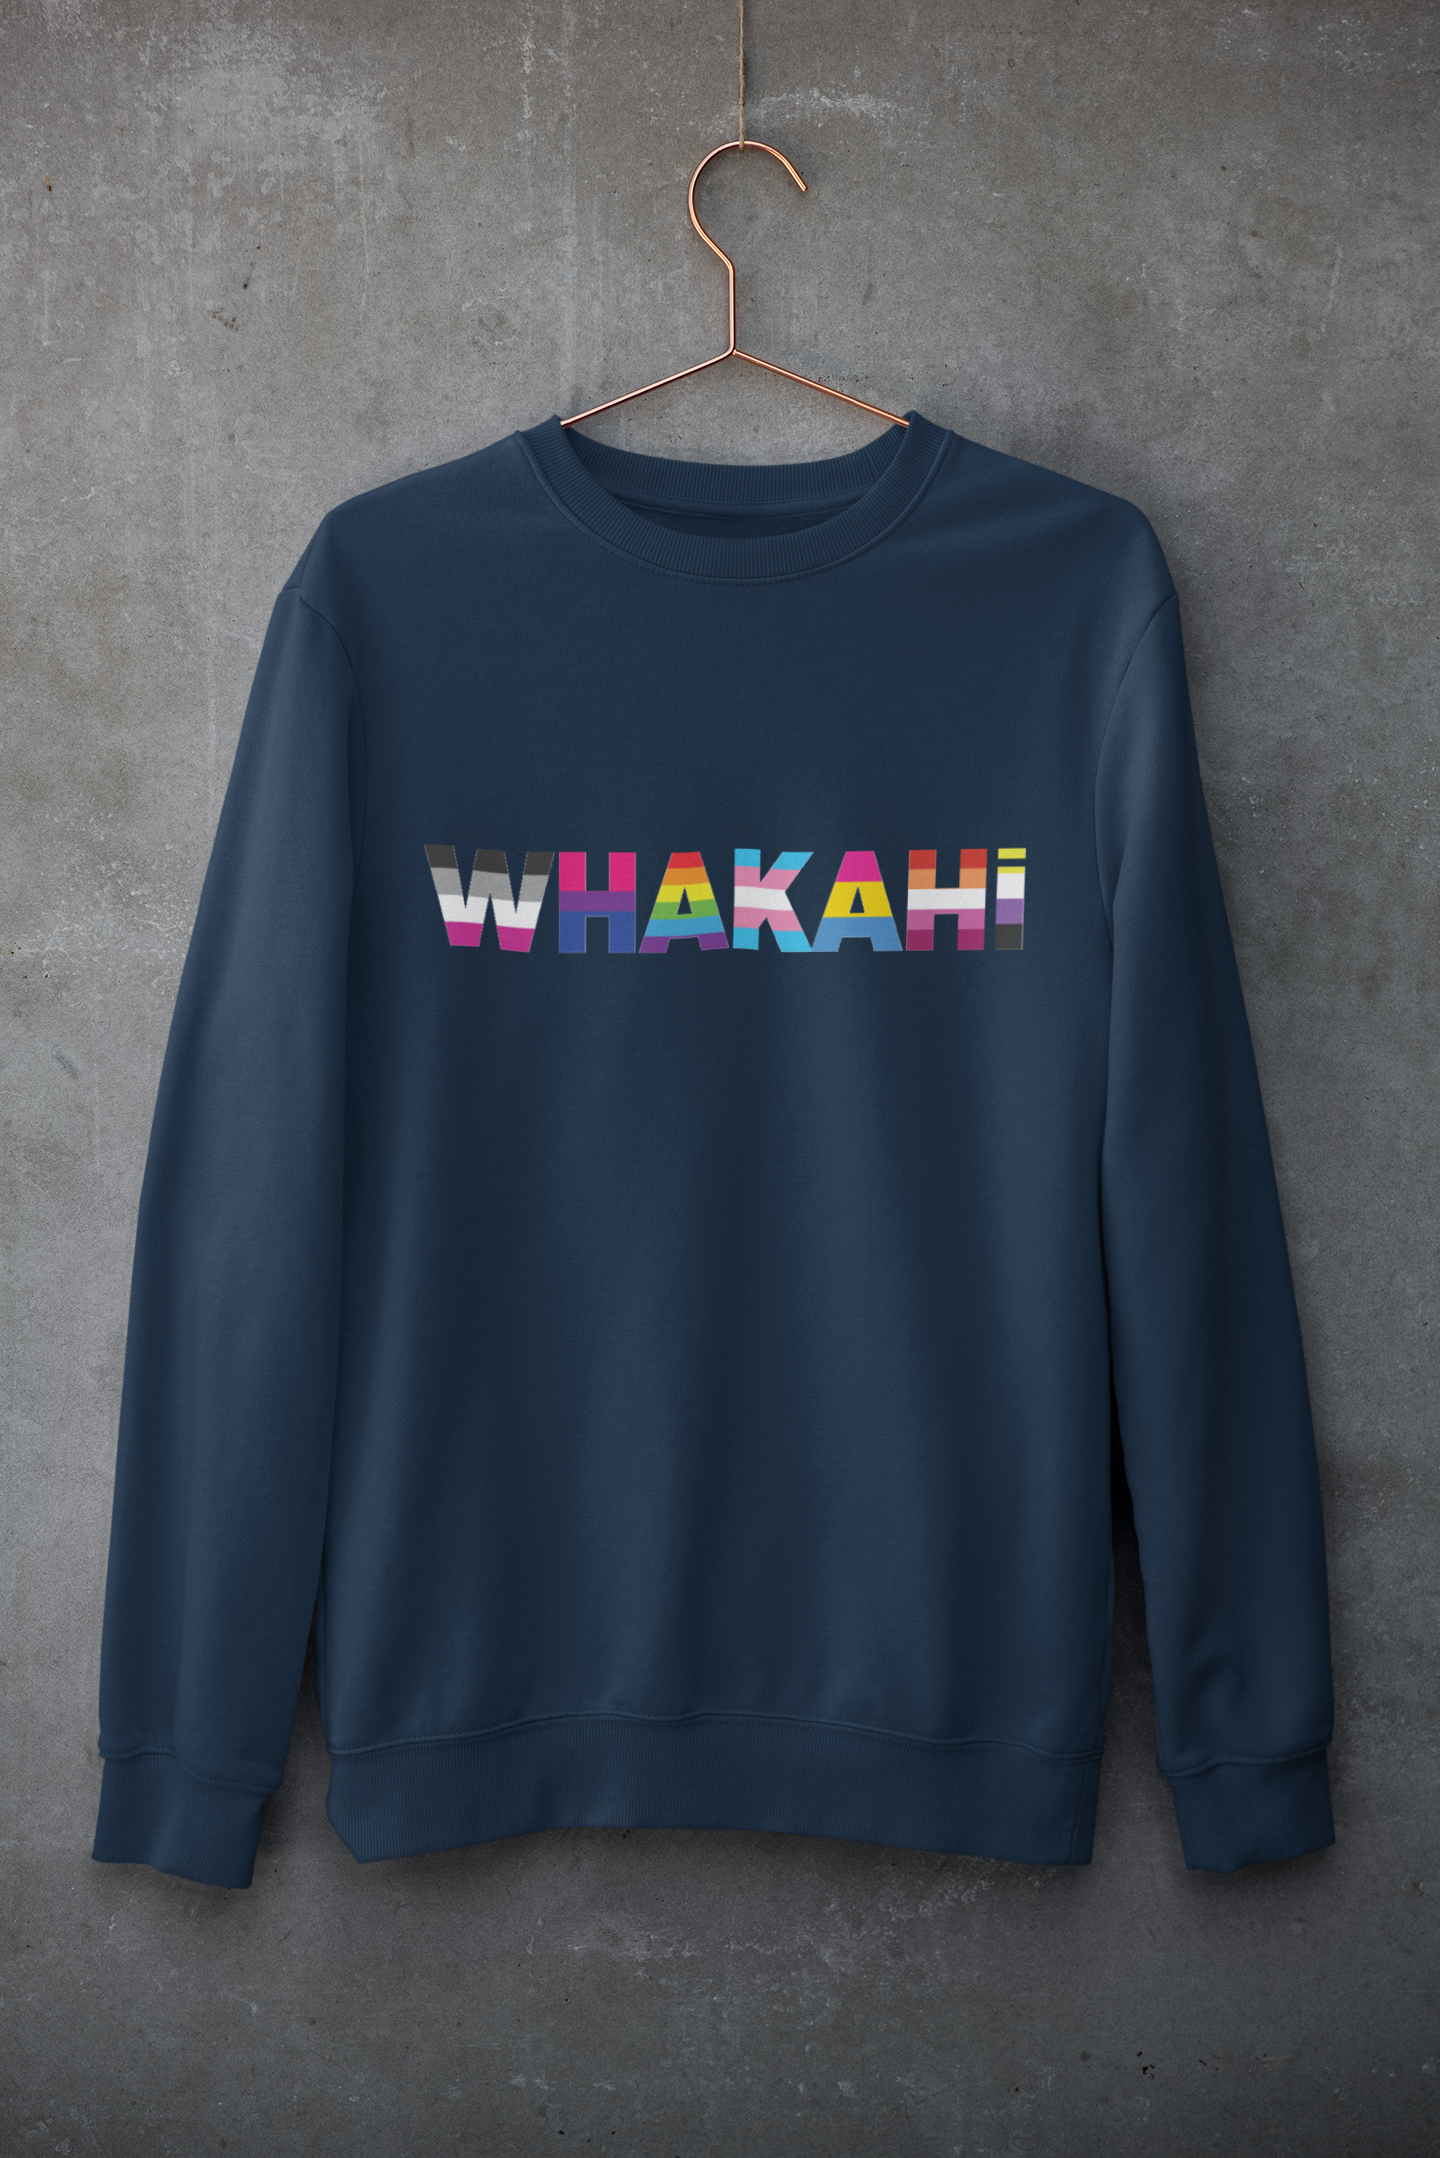 WHAKAHI - Sweatshirt